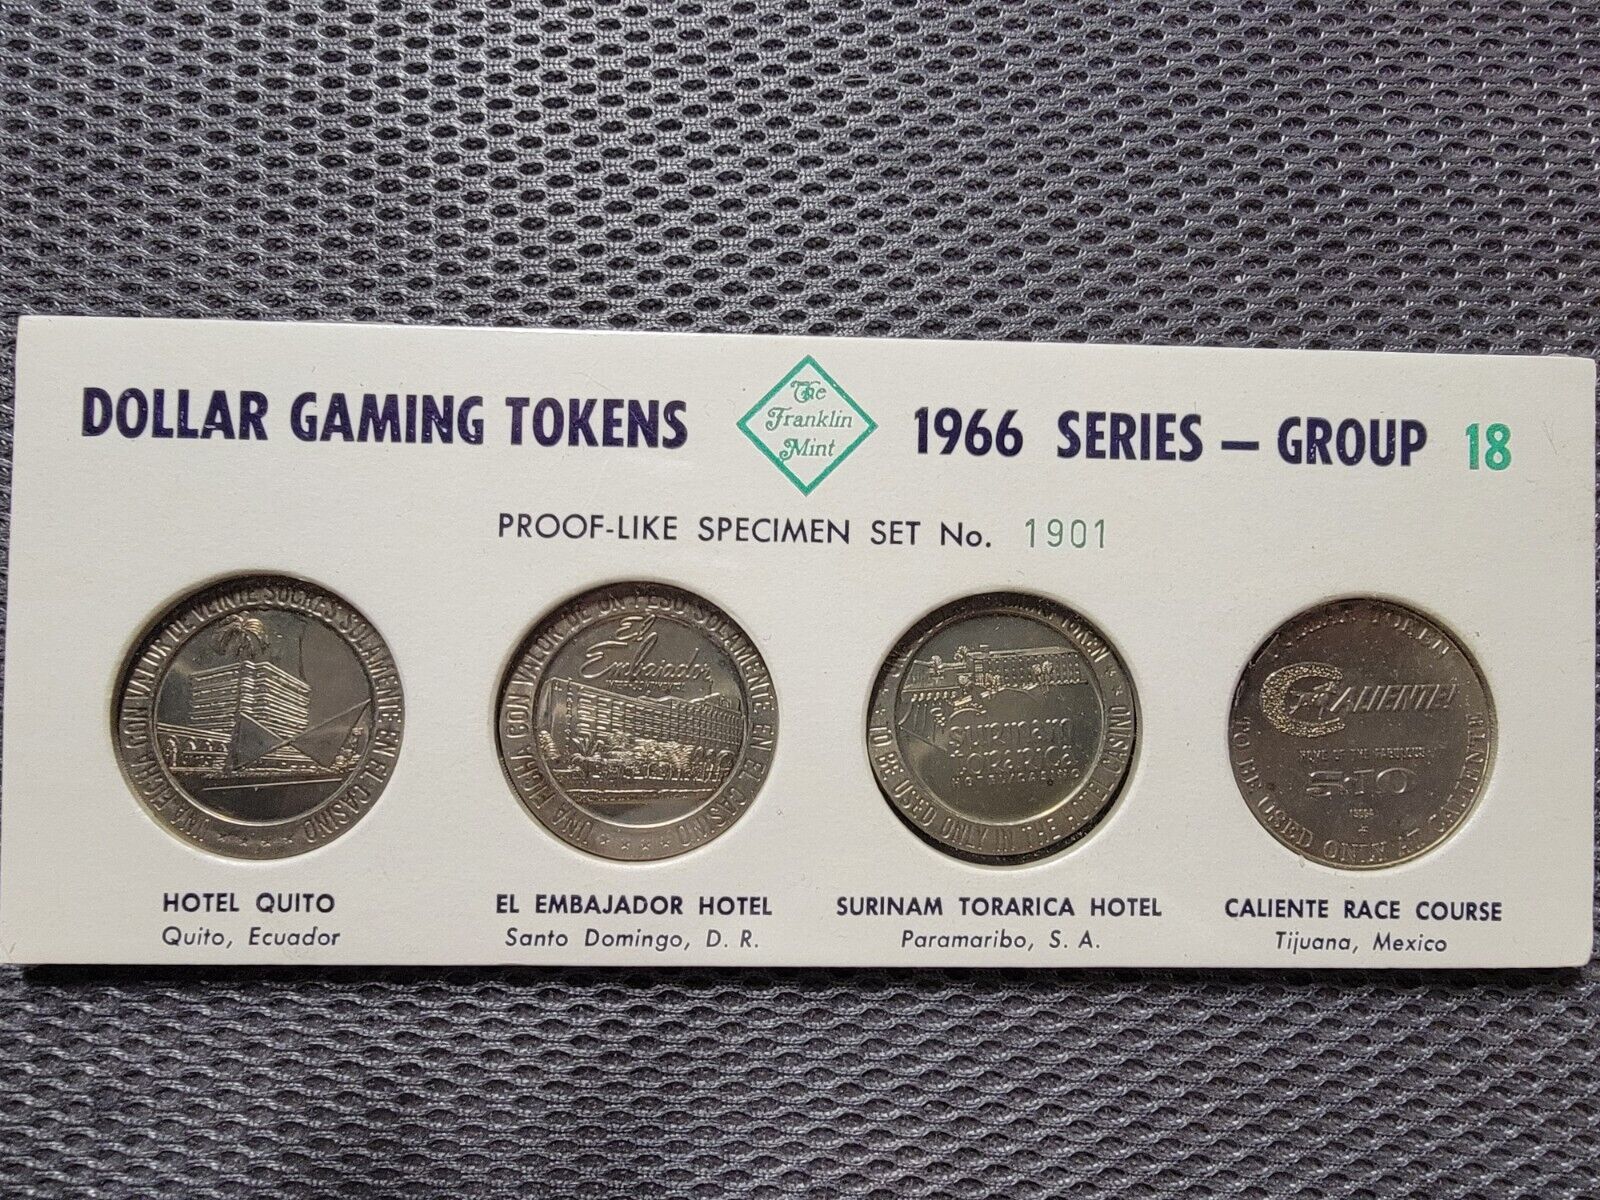 Franklin Mint 1966 Group 18 Dollar Gaming Tokens Proof-Like Specimen Set 1901